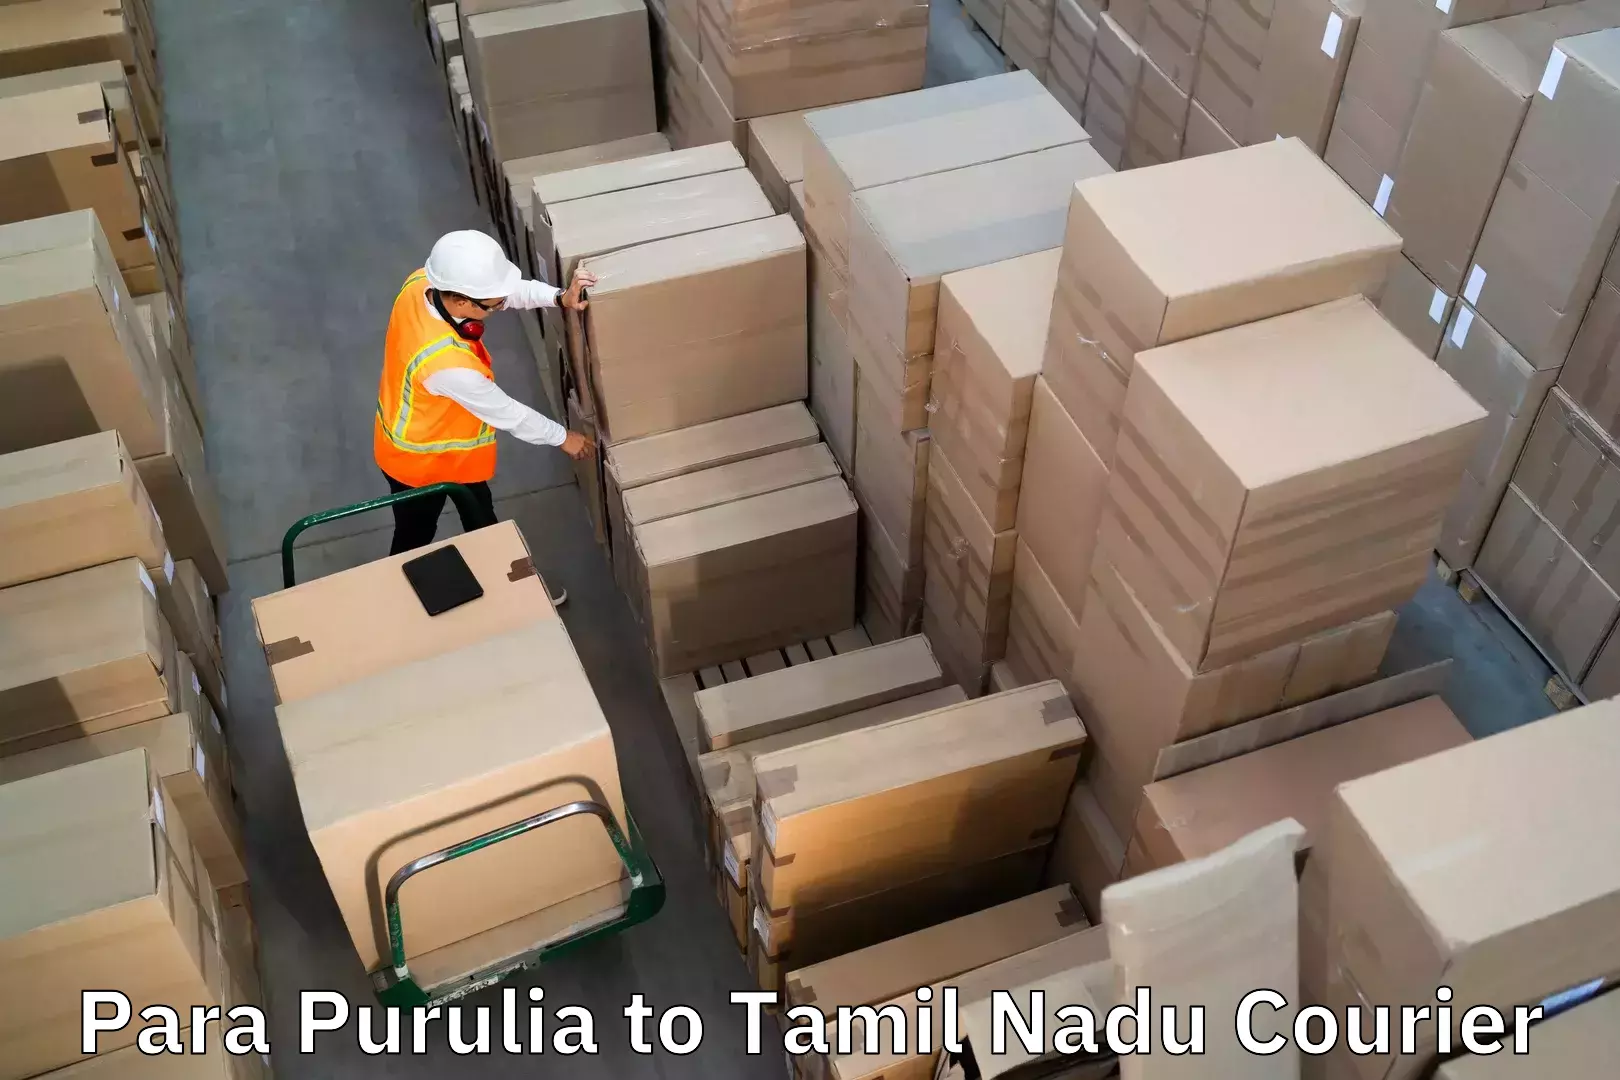 Luggage transport service Para Purulia to Ariyalur